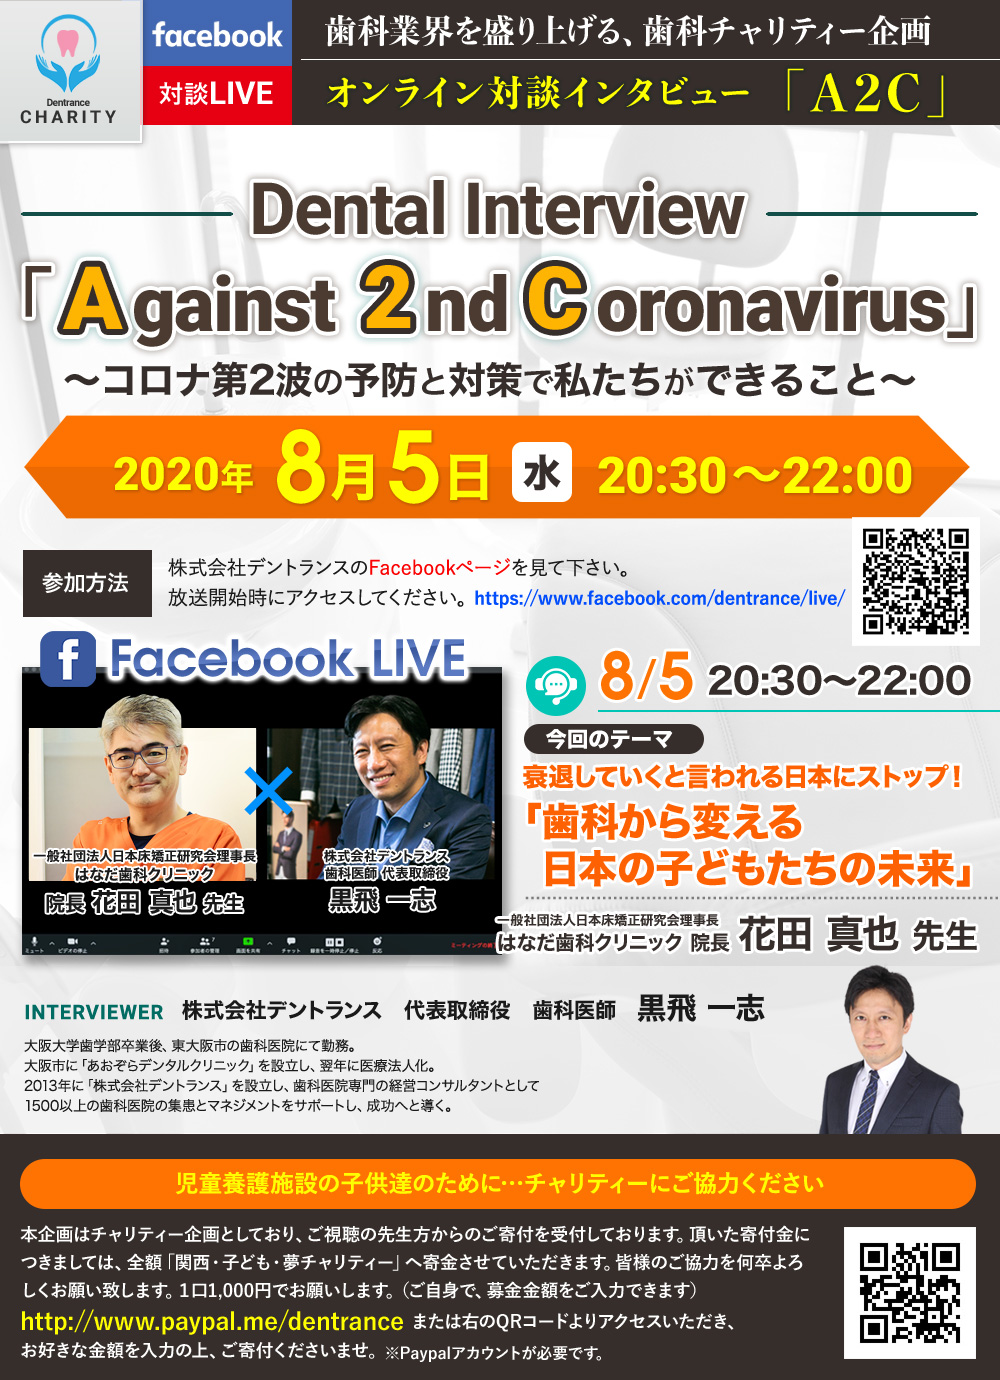 植田 憲太郎 先生「最新のデジタルデンティストリーで起こす、生産性の高い歯科医院作り」